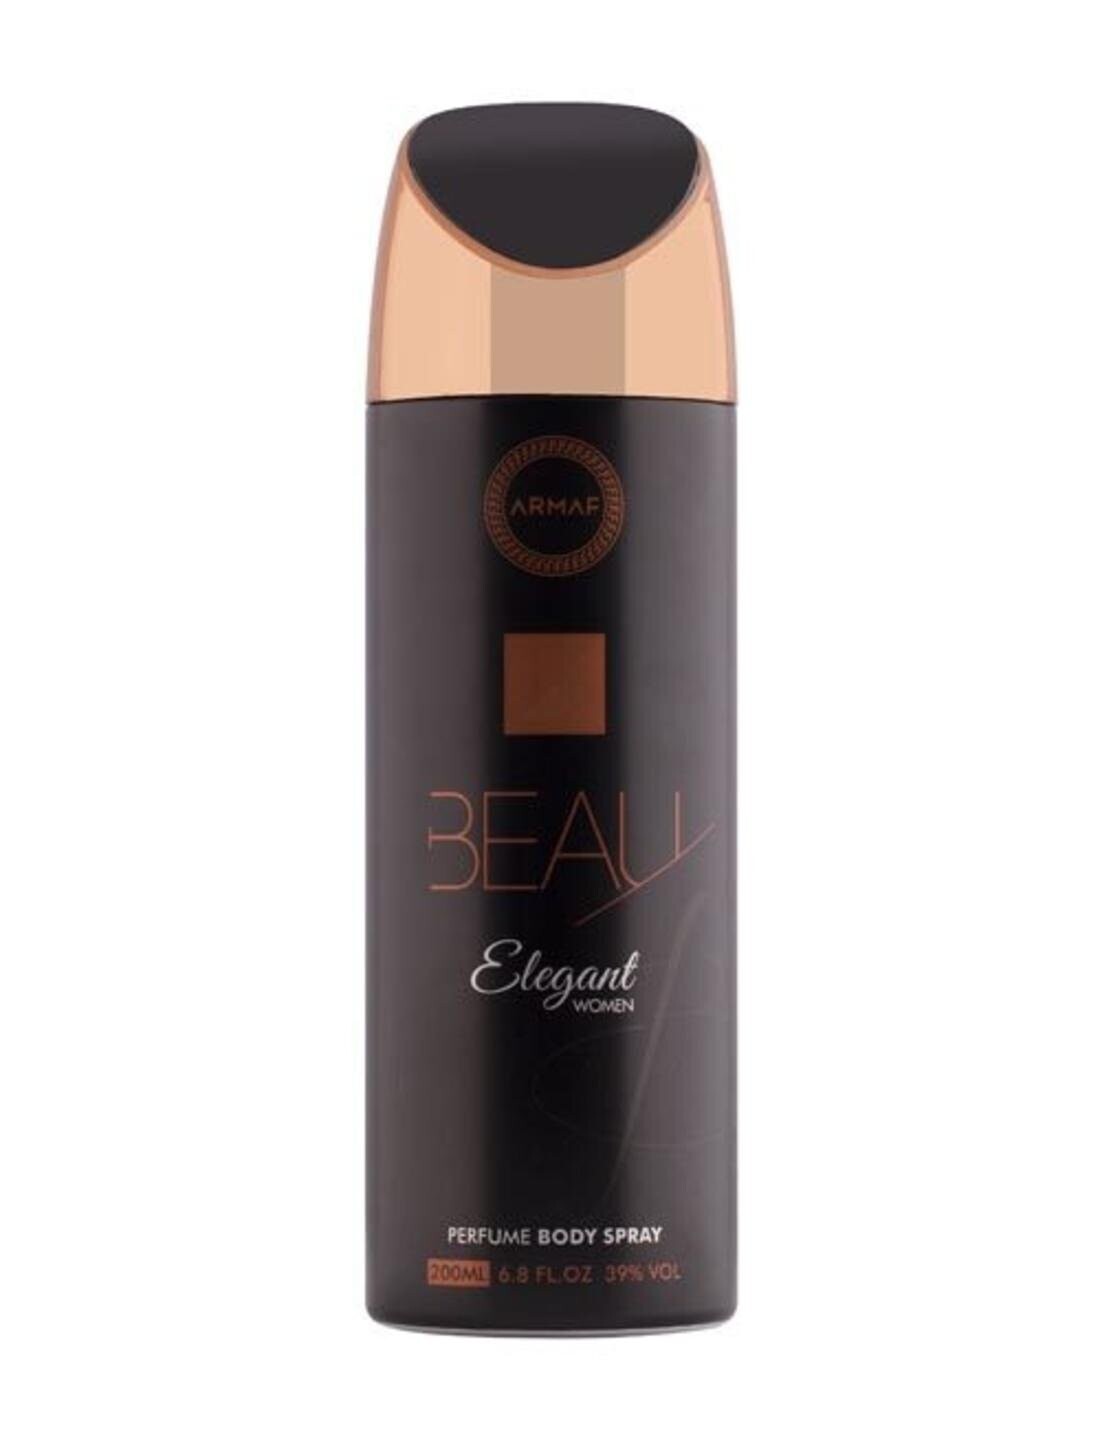 Armaf Beau Elegant Deodorant Body Spray For Women 200 ML